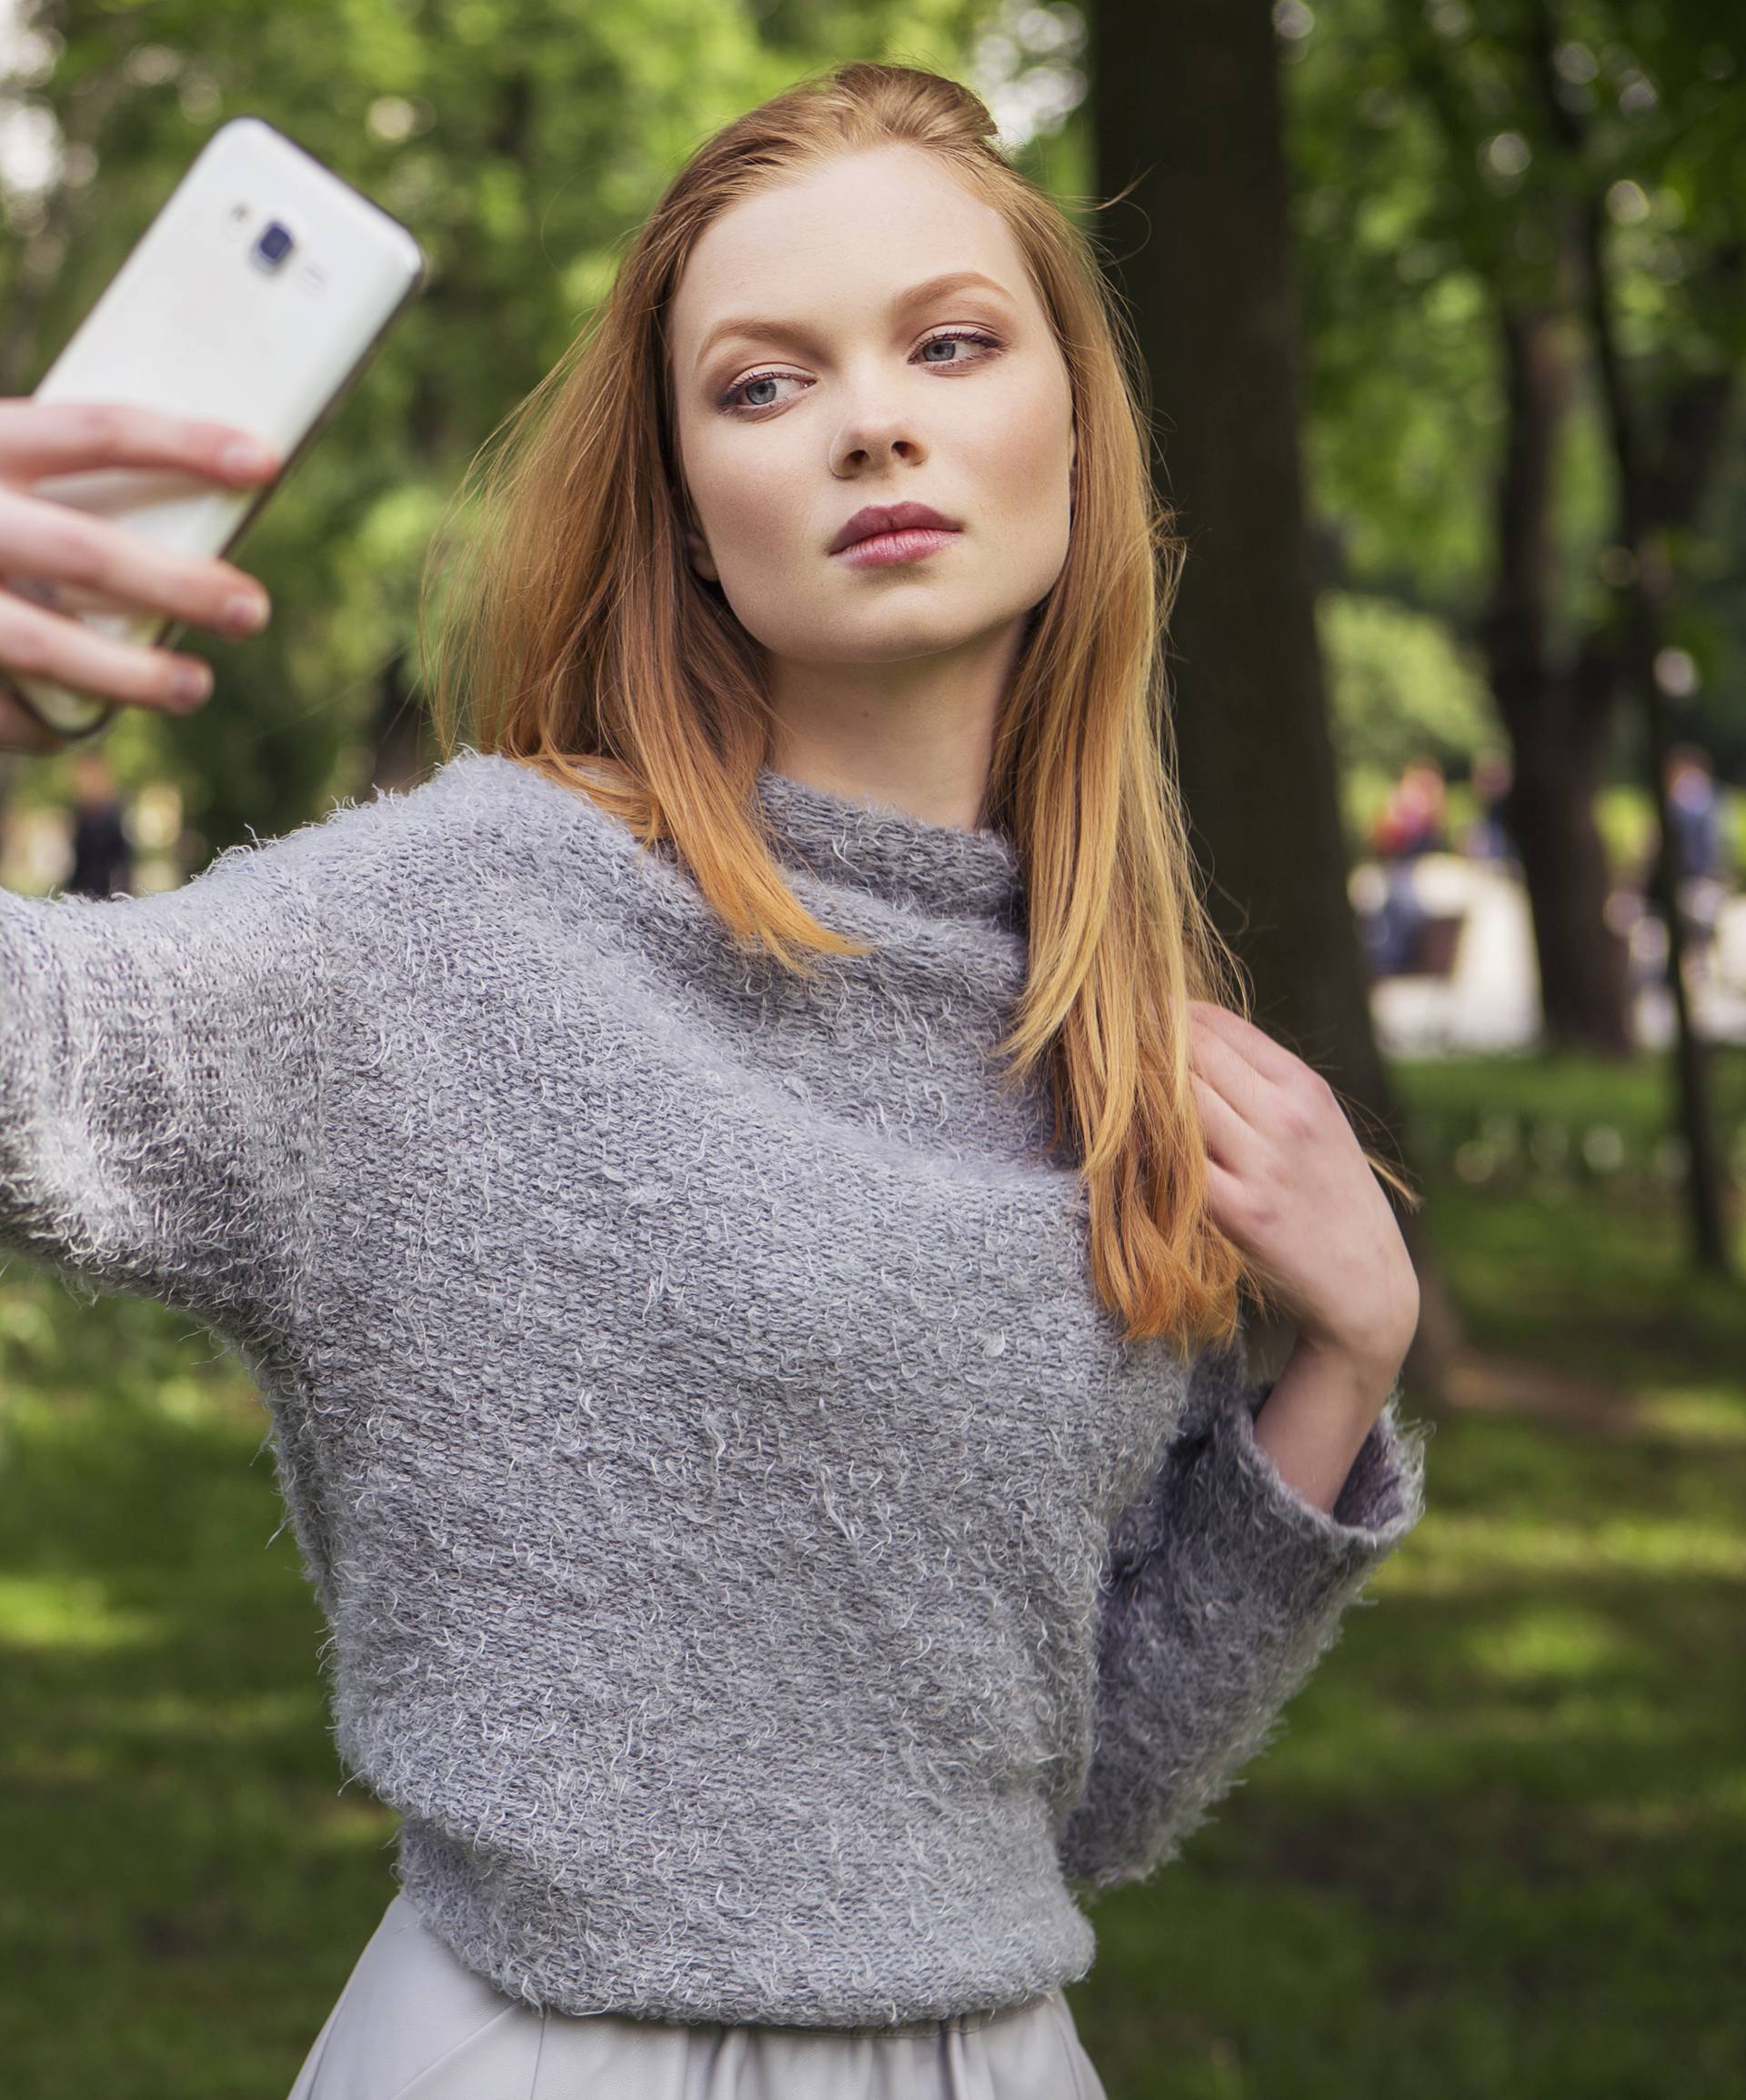 Kako se vi slikate za selfie? Postoji razlog zašto to činite